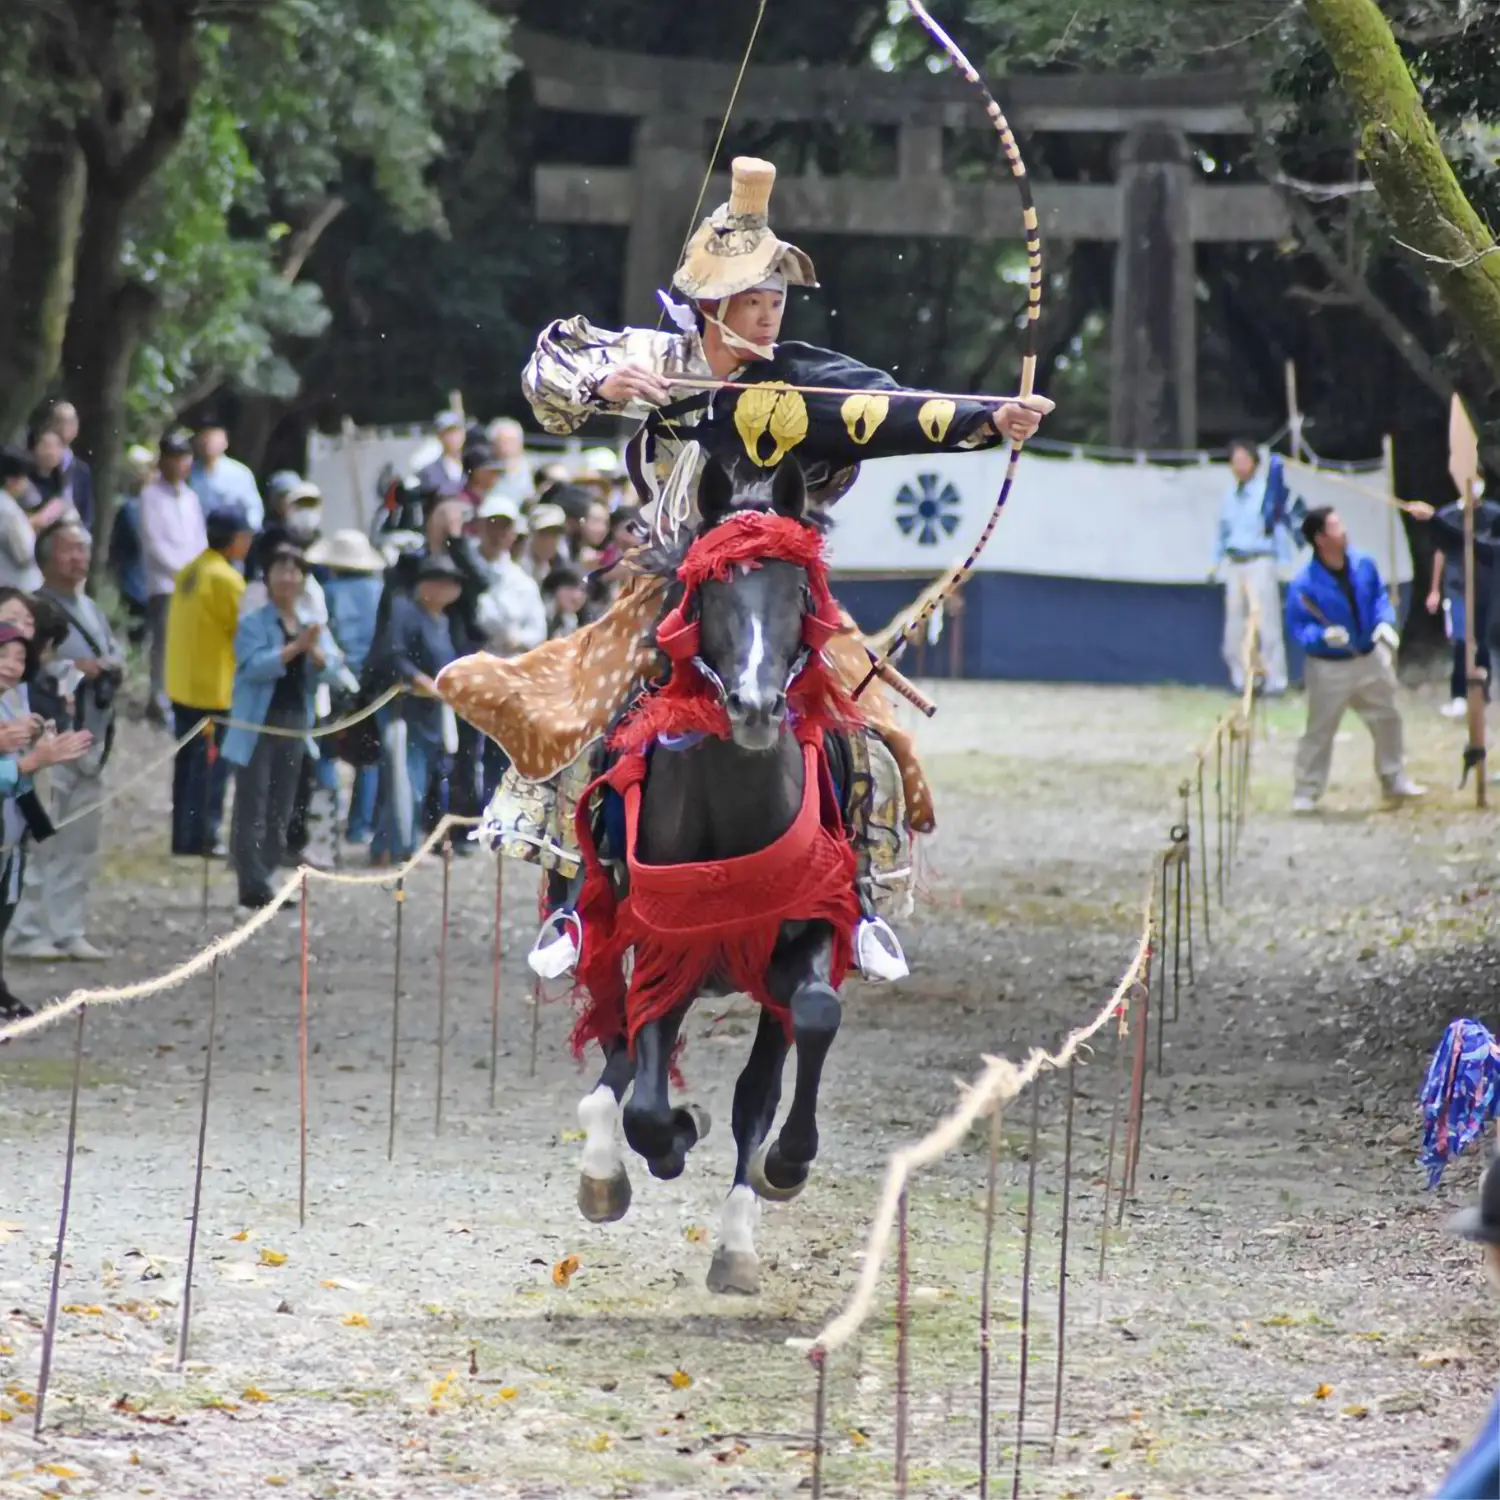 Entdecken Sie die Magie des jährlichen REITA-Sai-Festivals in Kamakura, wo die alte Kunst des japanischen Bogenschießens auf die Anmut des Reiters trifft. Tauchen Sie am 15. September in die spirituellen Rituale und die traditionelle Parade ein und erleben Sie dann am 16. September die atemberaubende Vorführung im Bogenschießen zu Pferd. Eine einzigartige Reise durch die Geschichte und